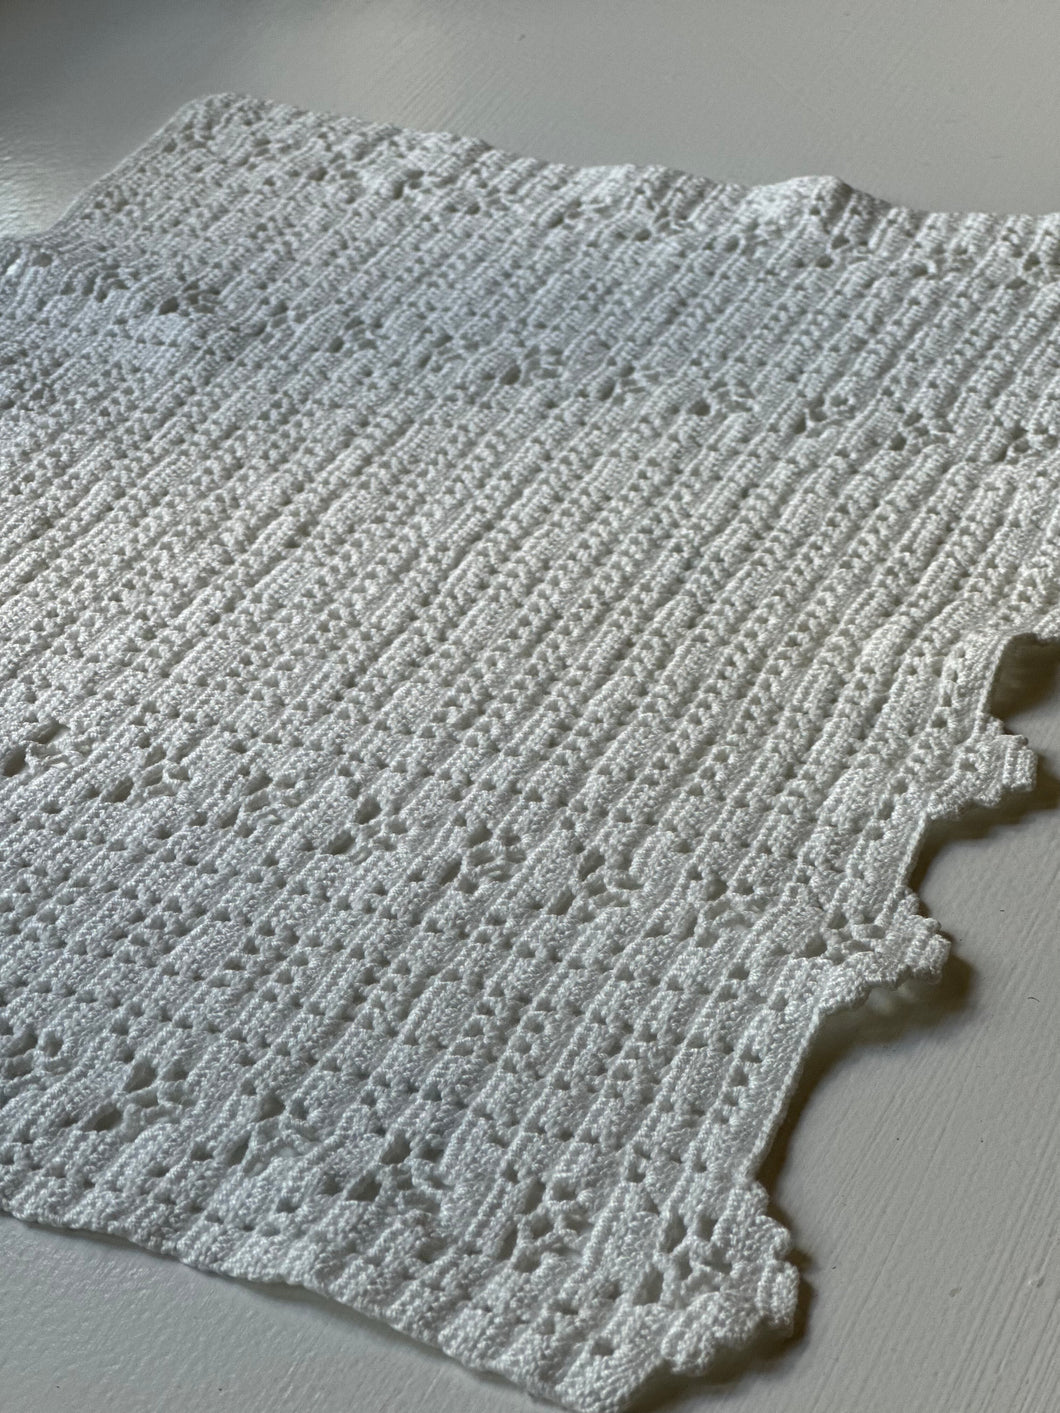 Crocheted Rectangular Table Mat